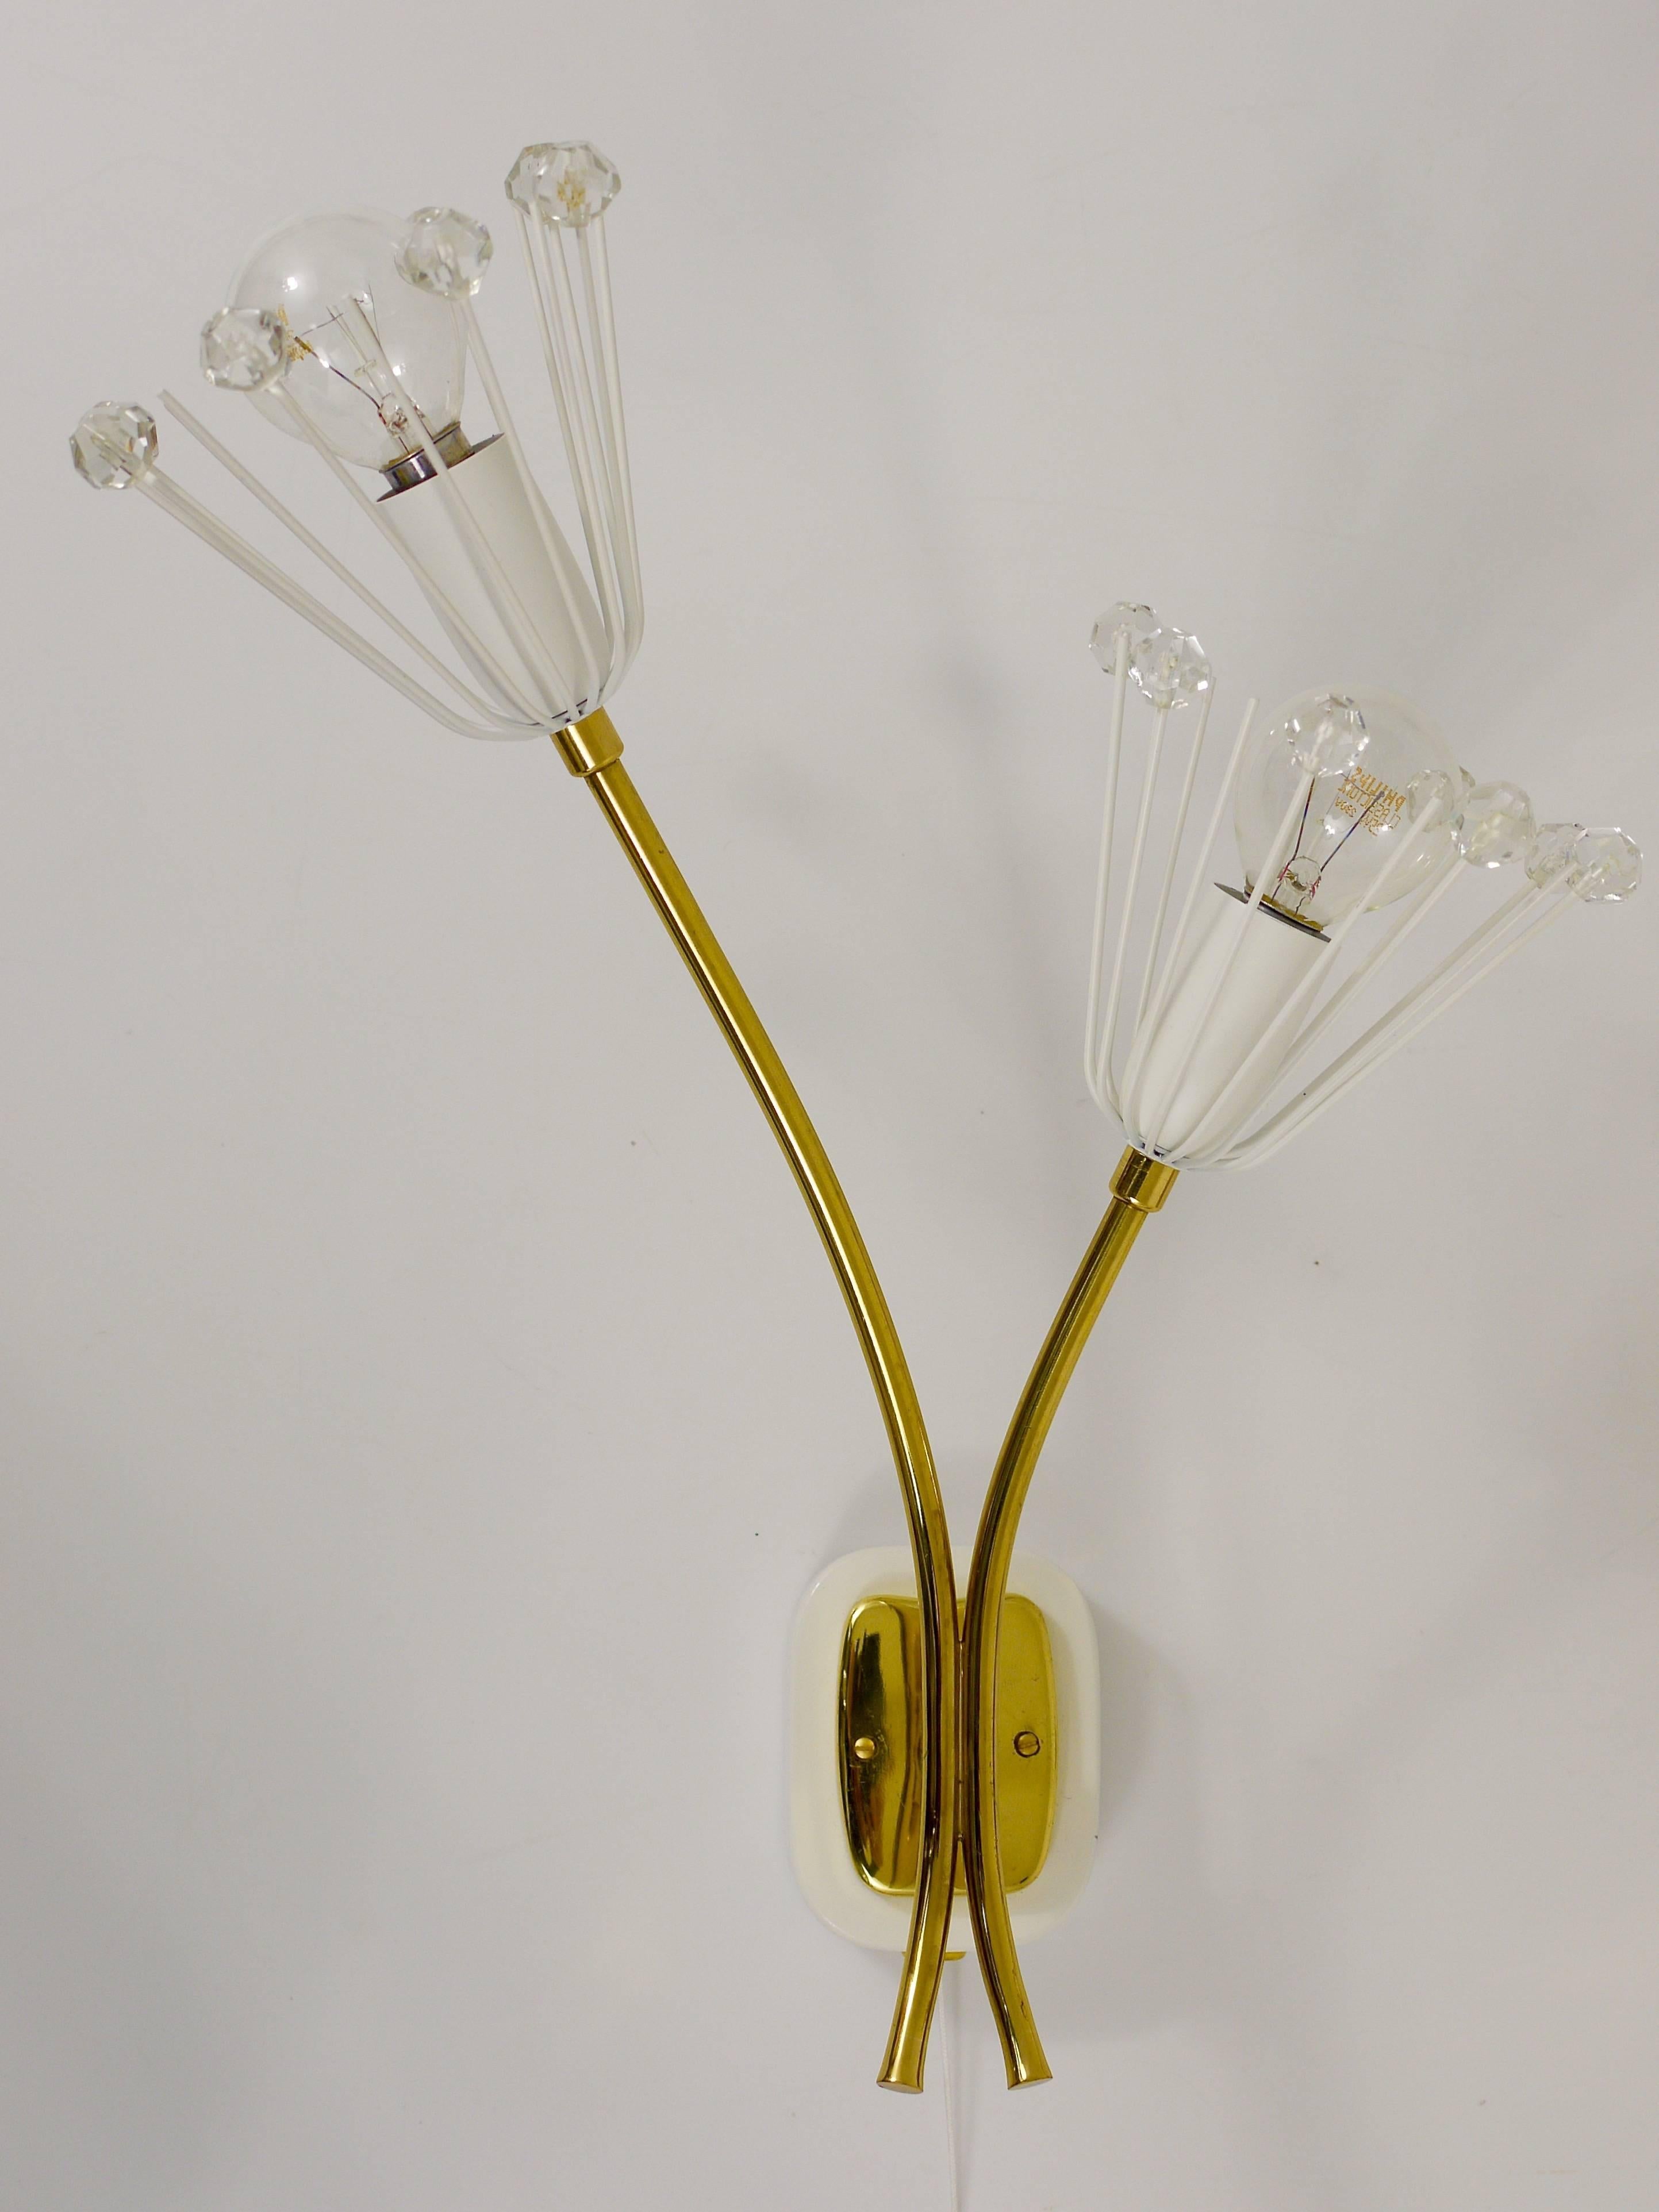 Bis zu 3 identische Paare österreichischer floraler Messing-Wandleuchten mit zwei Armen und Glaskristallen und integrierten Schaltern. Entworfen von Emil Stejnar, ausgeführt von Rupert Nikoll in den 1950er Jahren. Professionell restauriert und neu